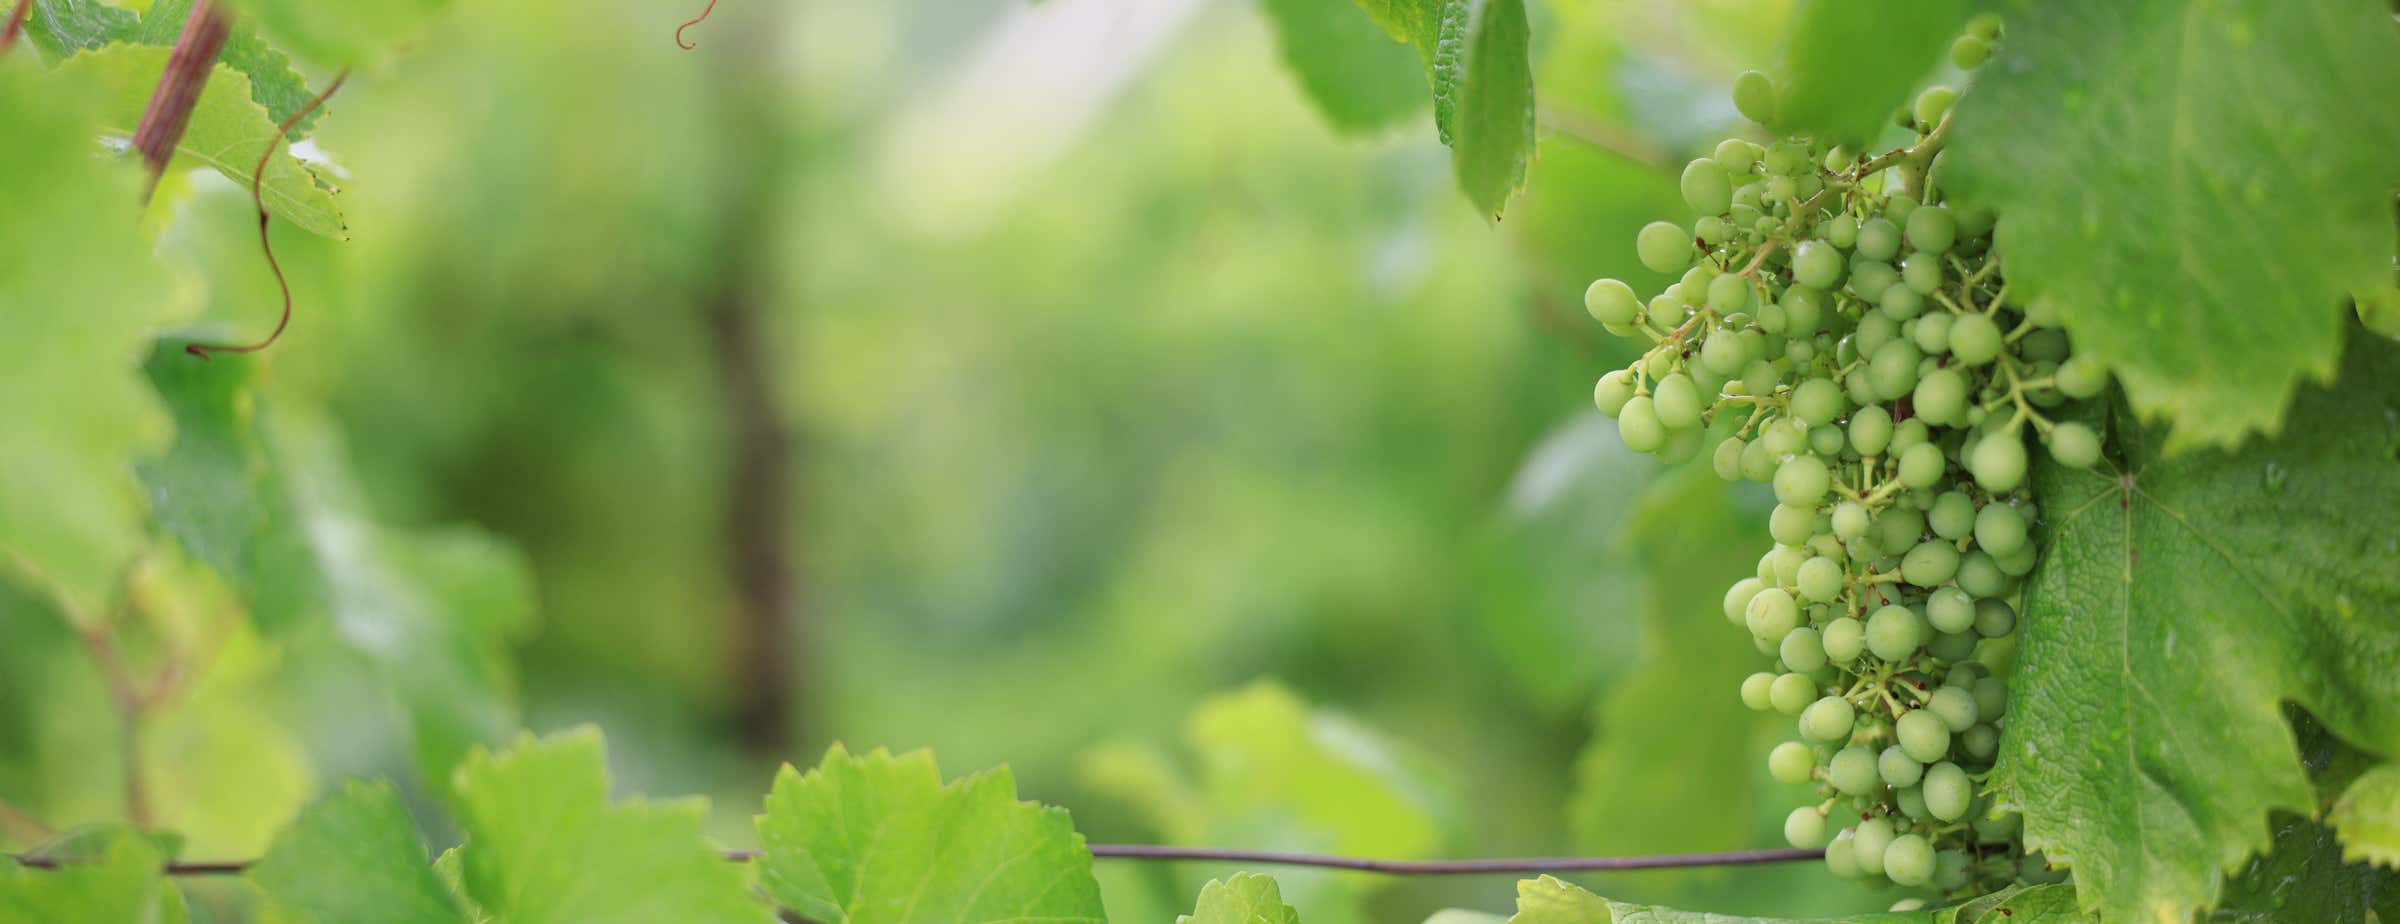 Imagen de uvas verdes colgando en un viñedo rodeado de hojas verdes. 